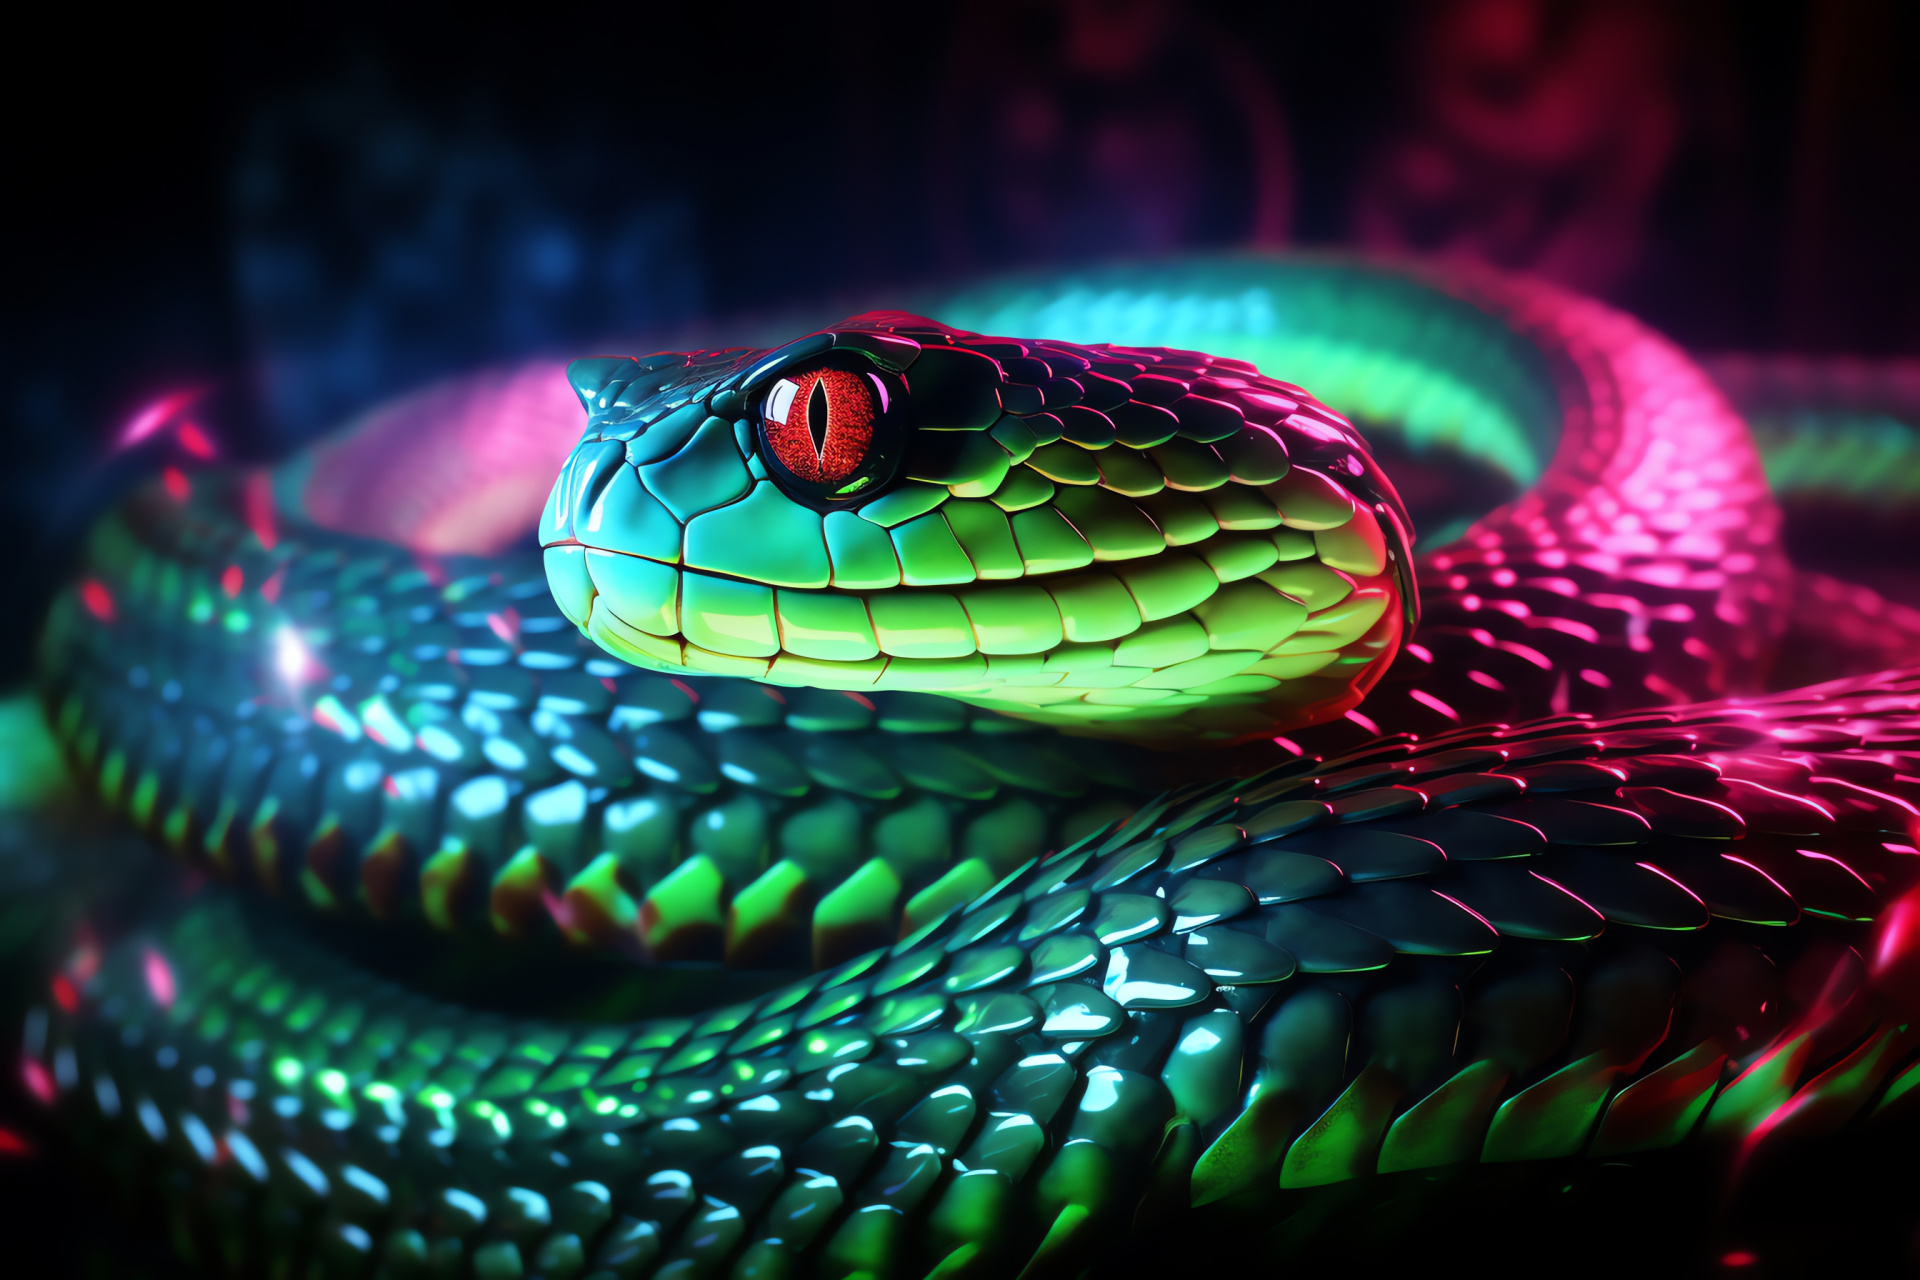 Green Neon Snake, Reptilian glare, Artistic tri-tone background, Shine and contrast, HD Desktop Wallpaper